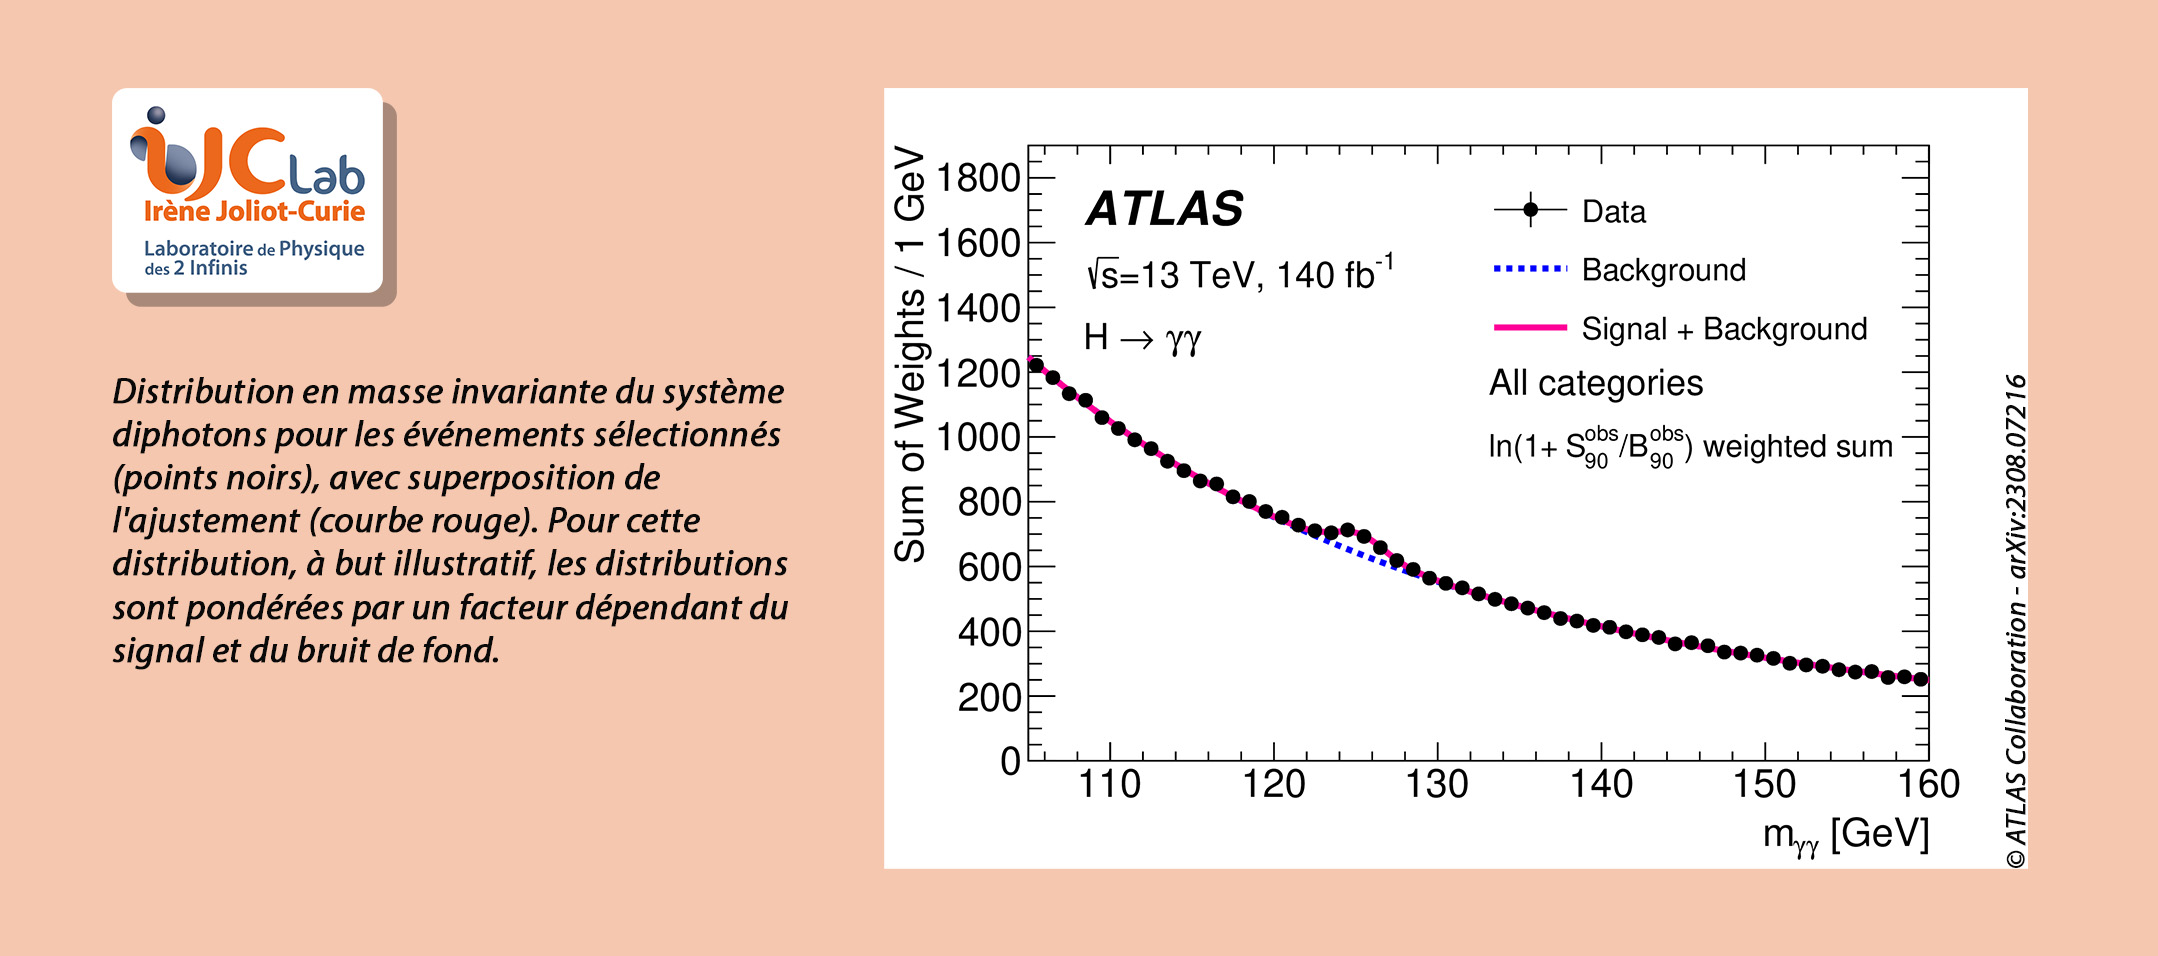 ATLAS sonde la masse du boson de Higgs au niveau du pour mille